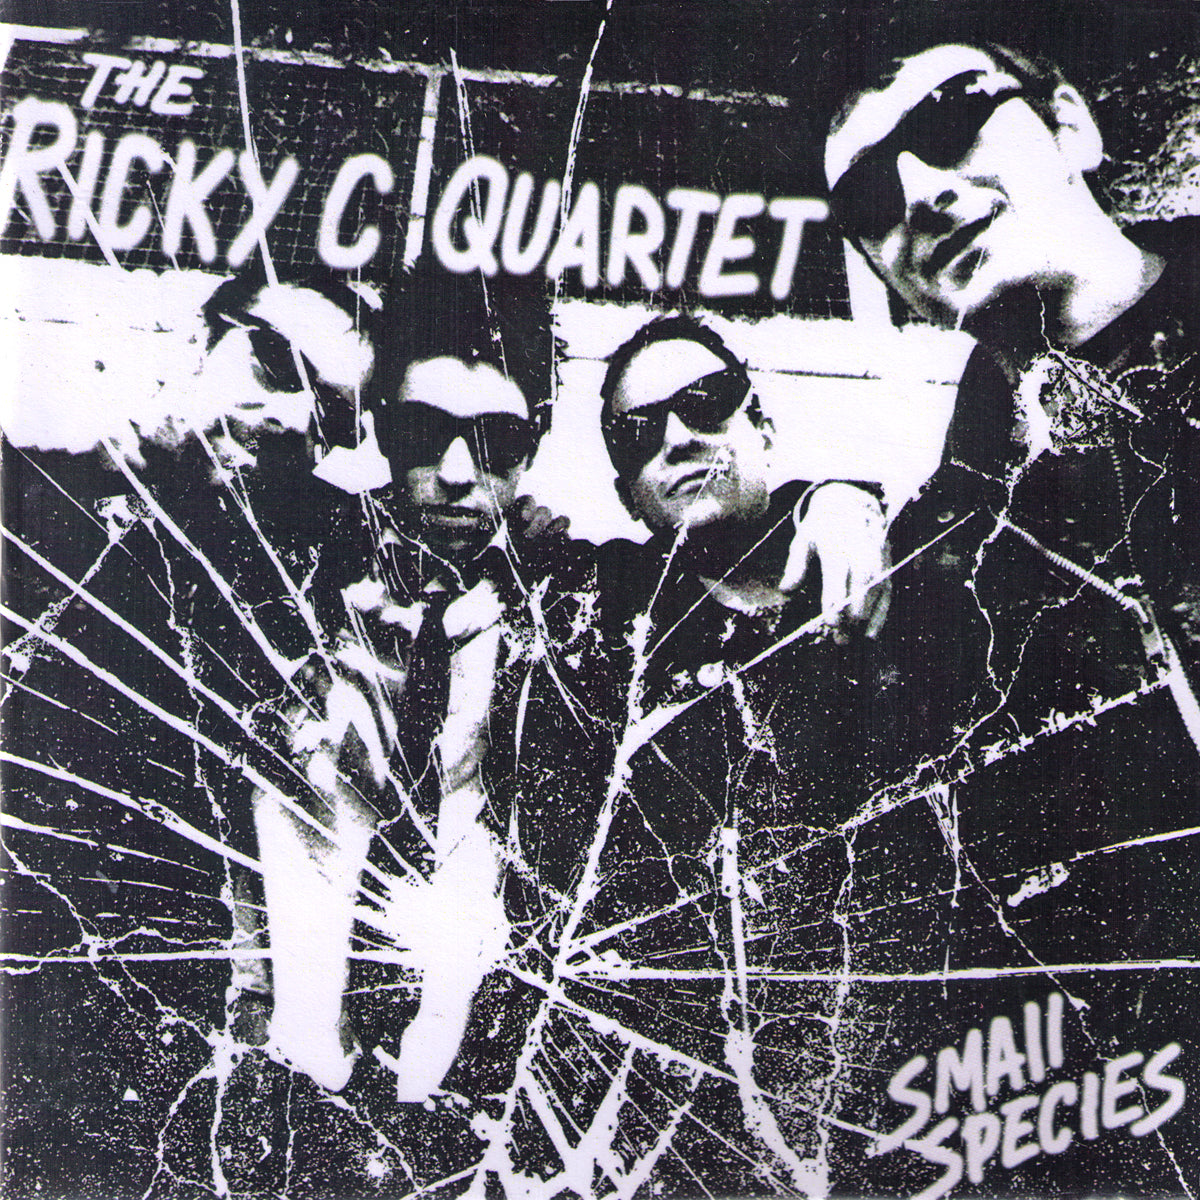 Ricky C Quartet- Small Species 7" ~KILLER!